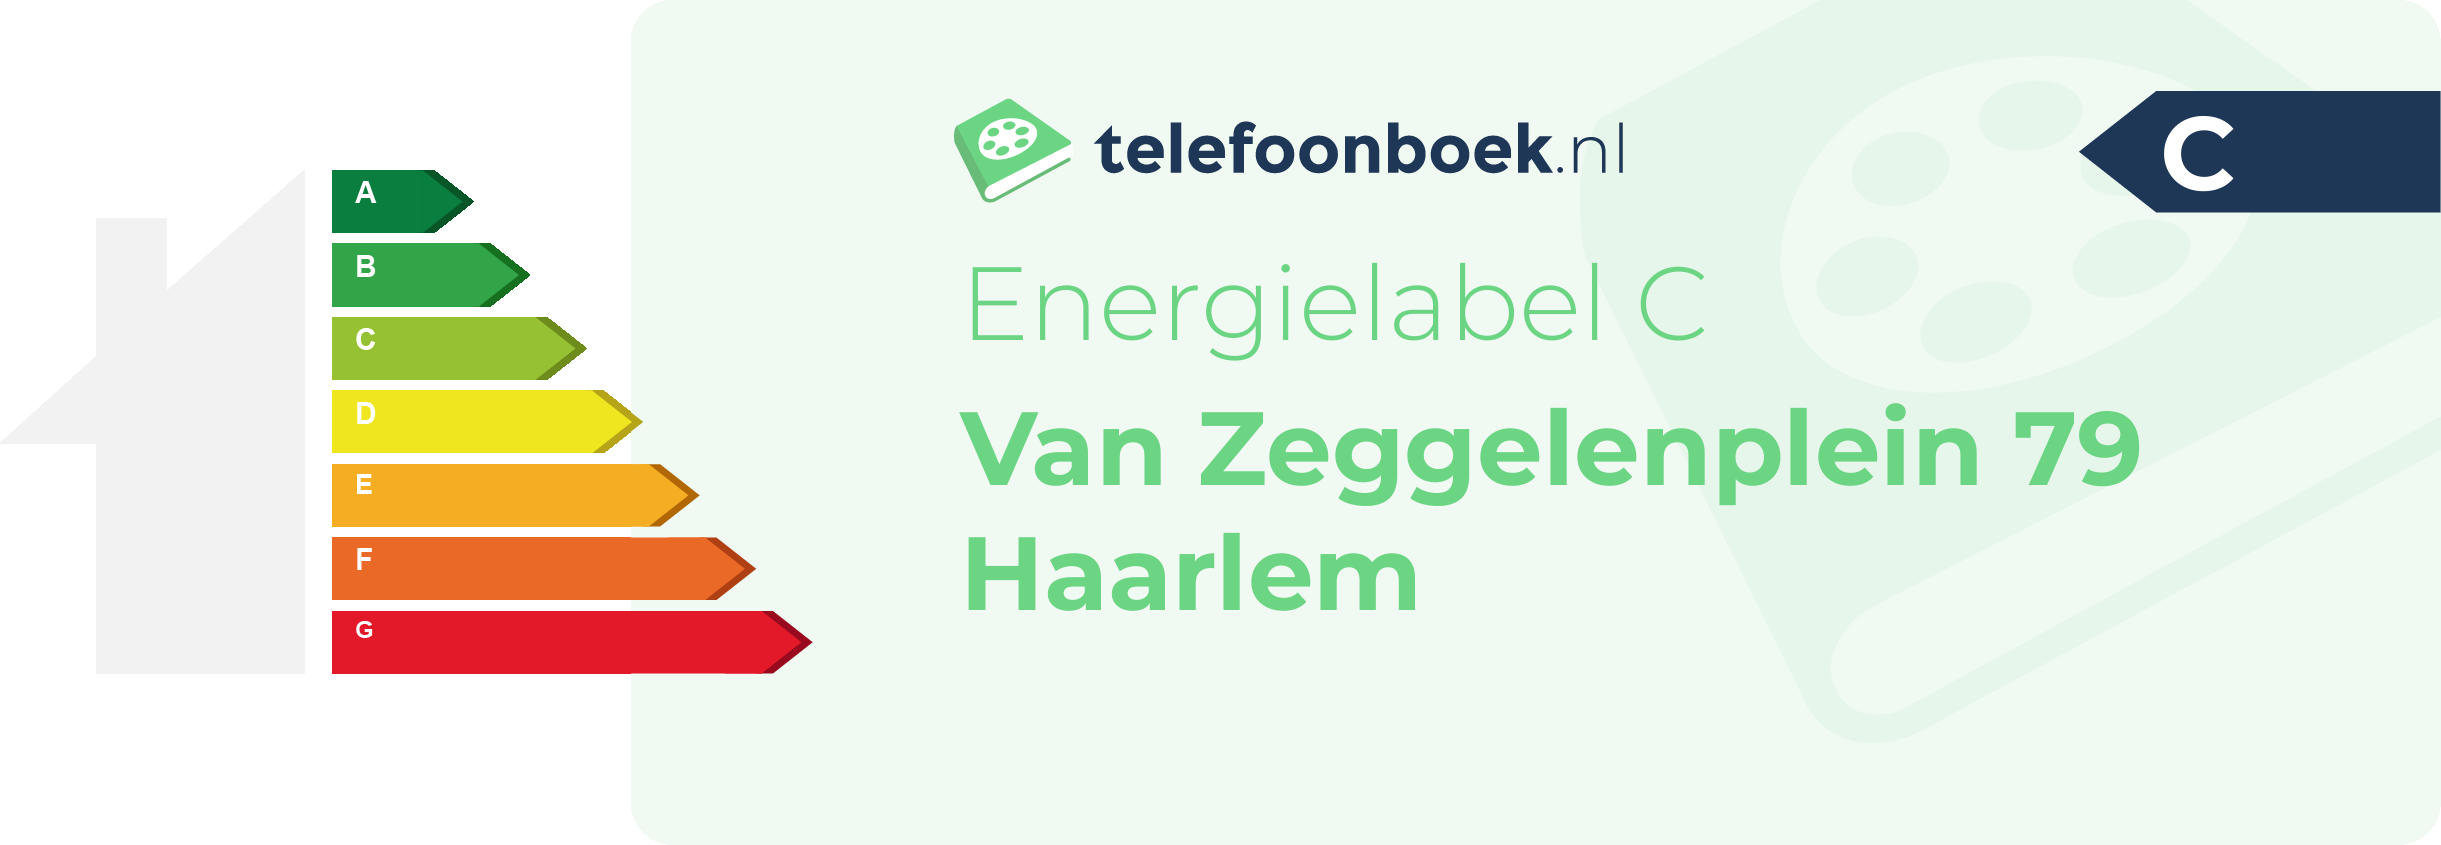 Energielabel Van Zeggelenplein 79 Haarlem